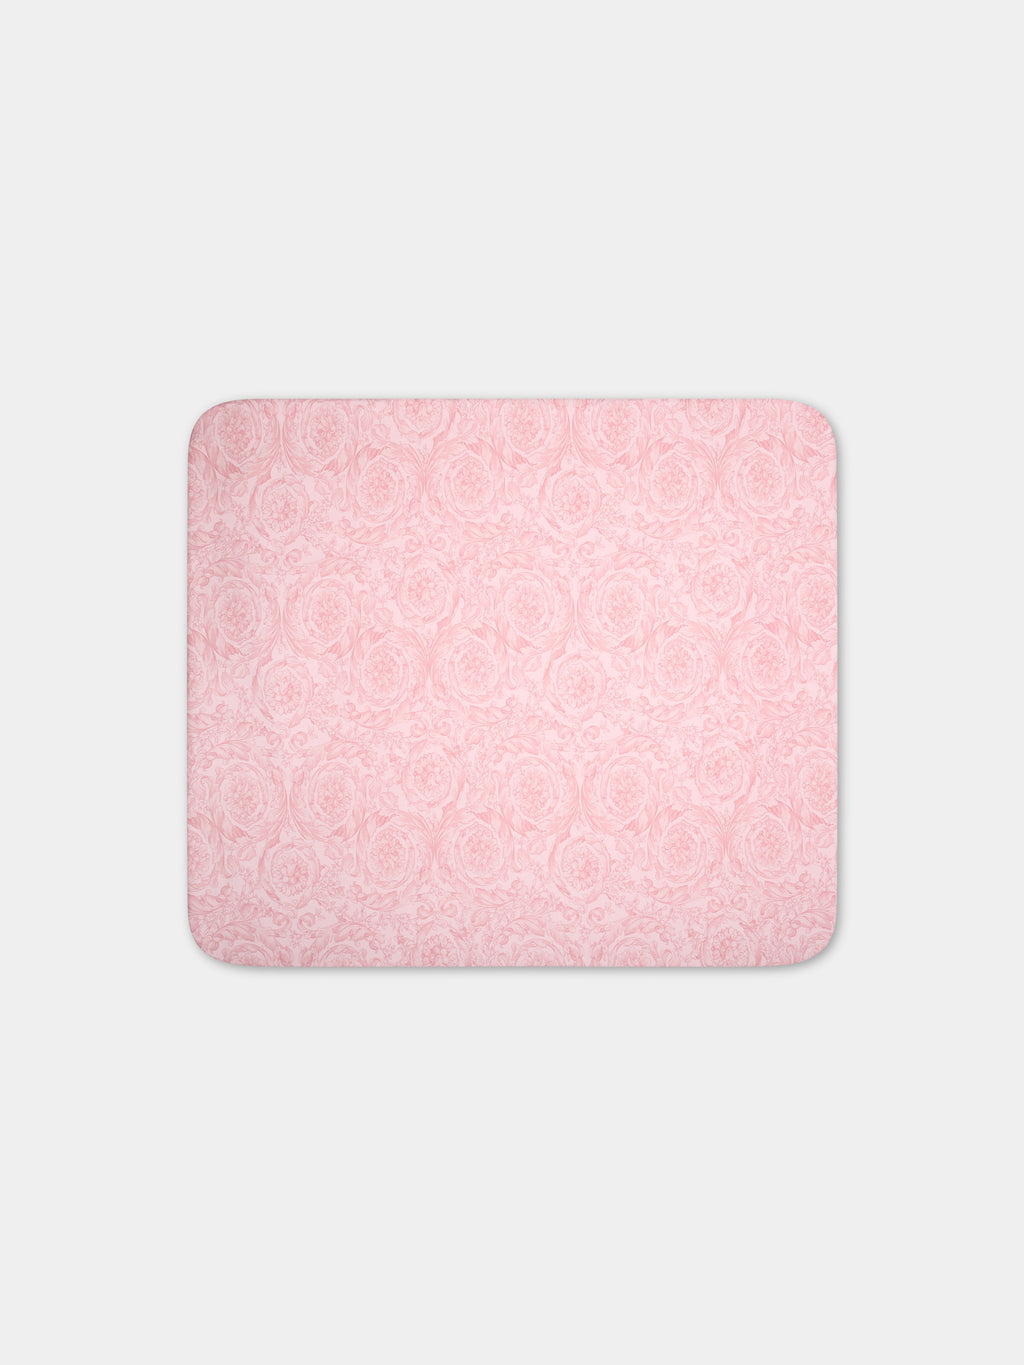 Coperta rosa per neonata con stampa barocco